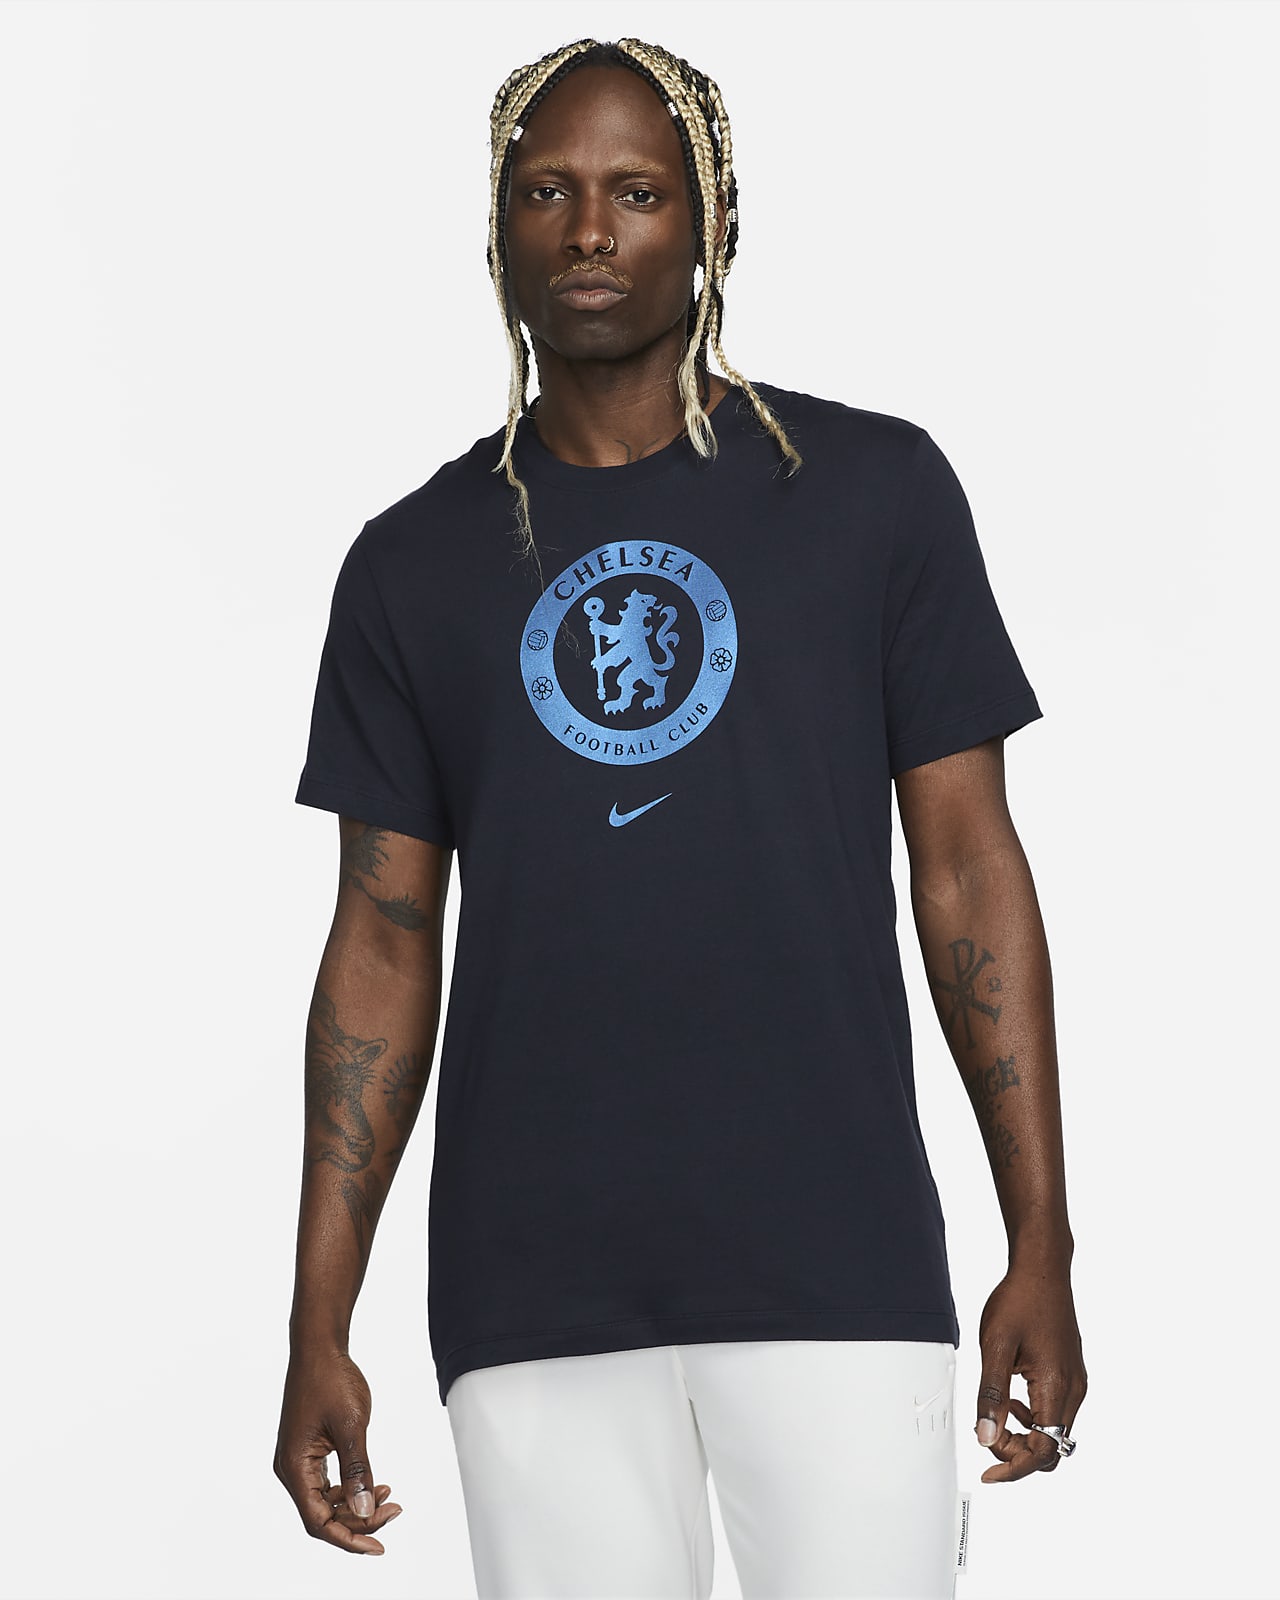 Chelsea FC Crest Men's Soccer T-Shirt